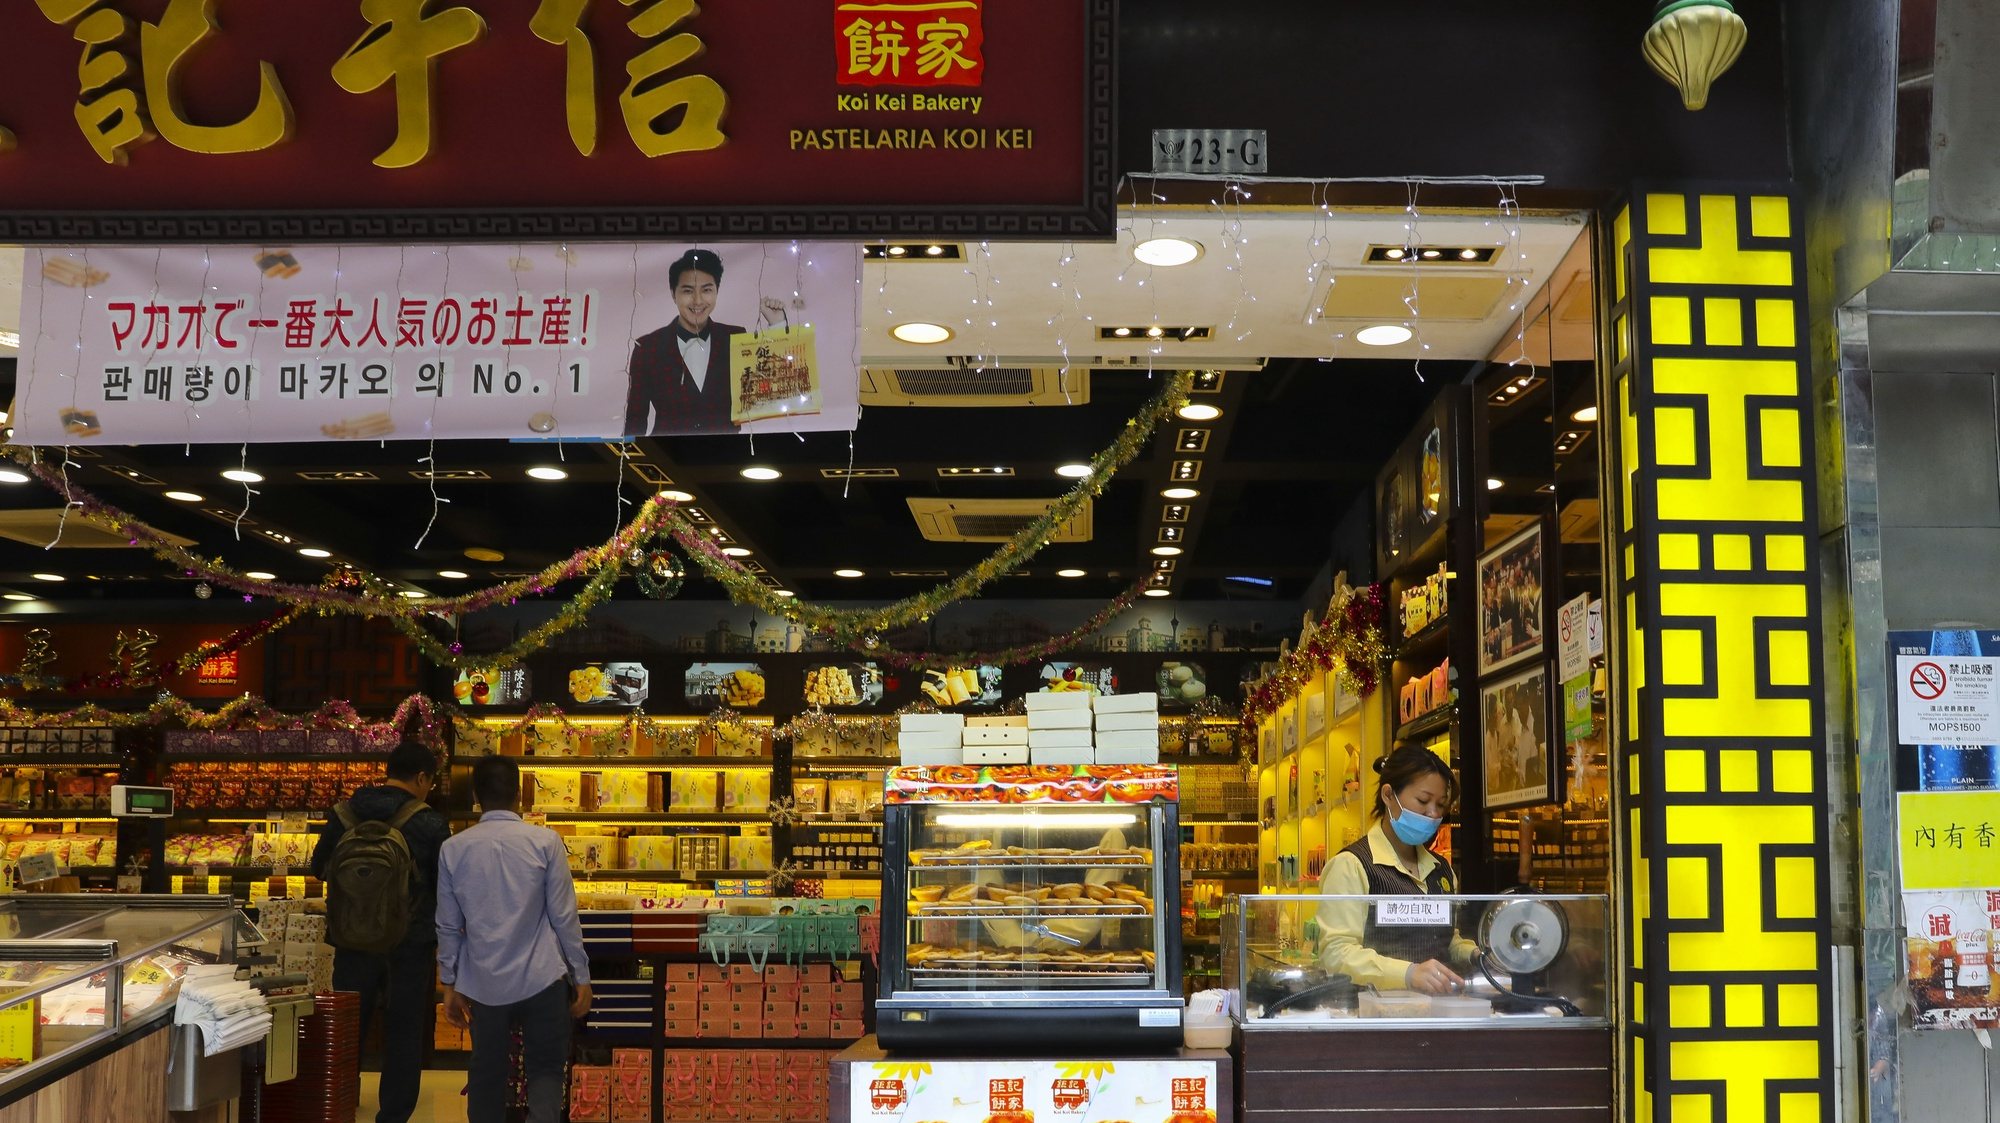 Pastelaria que entre outros produtos, vende pasteis de nata numa rua em Macau, China.17 de dezembro de 2019. JOÃO RELVAS/LUSA